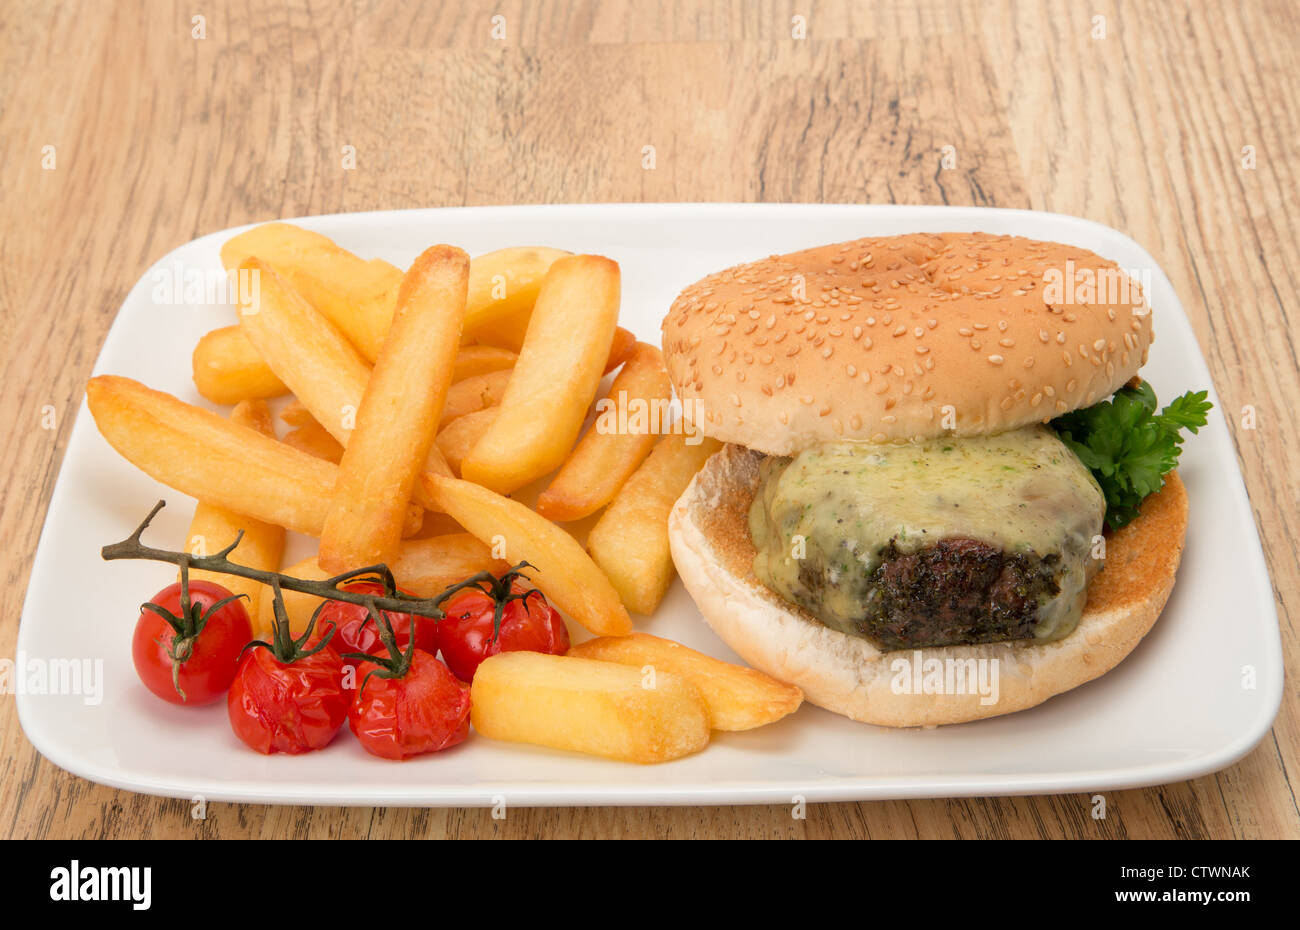 Burger et frites dîner - studio shot Banque D'Images